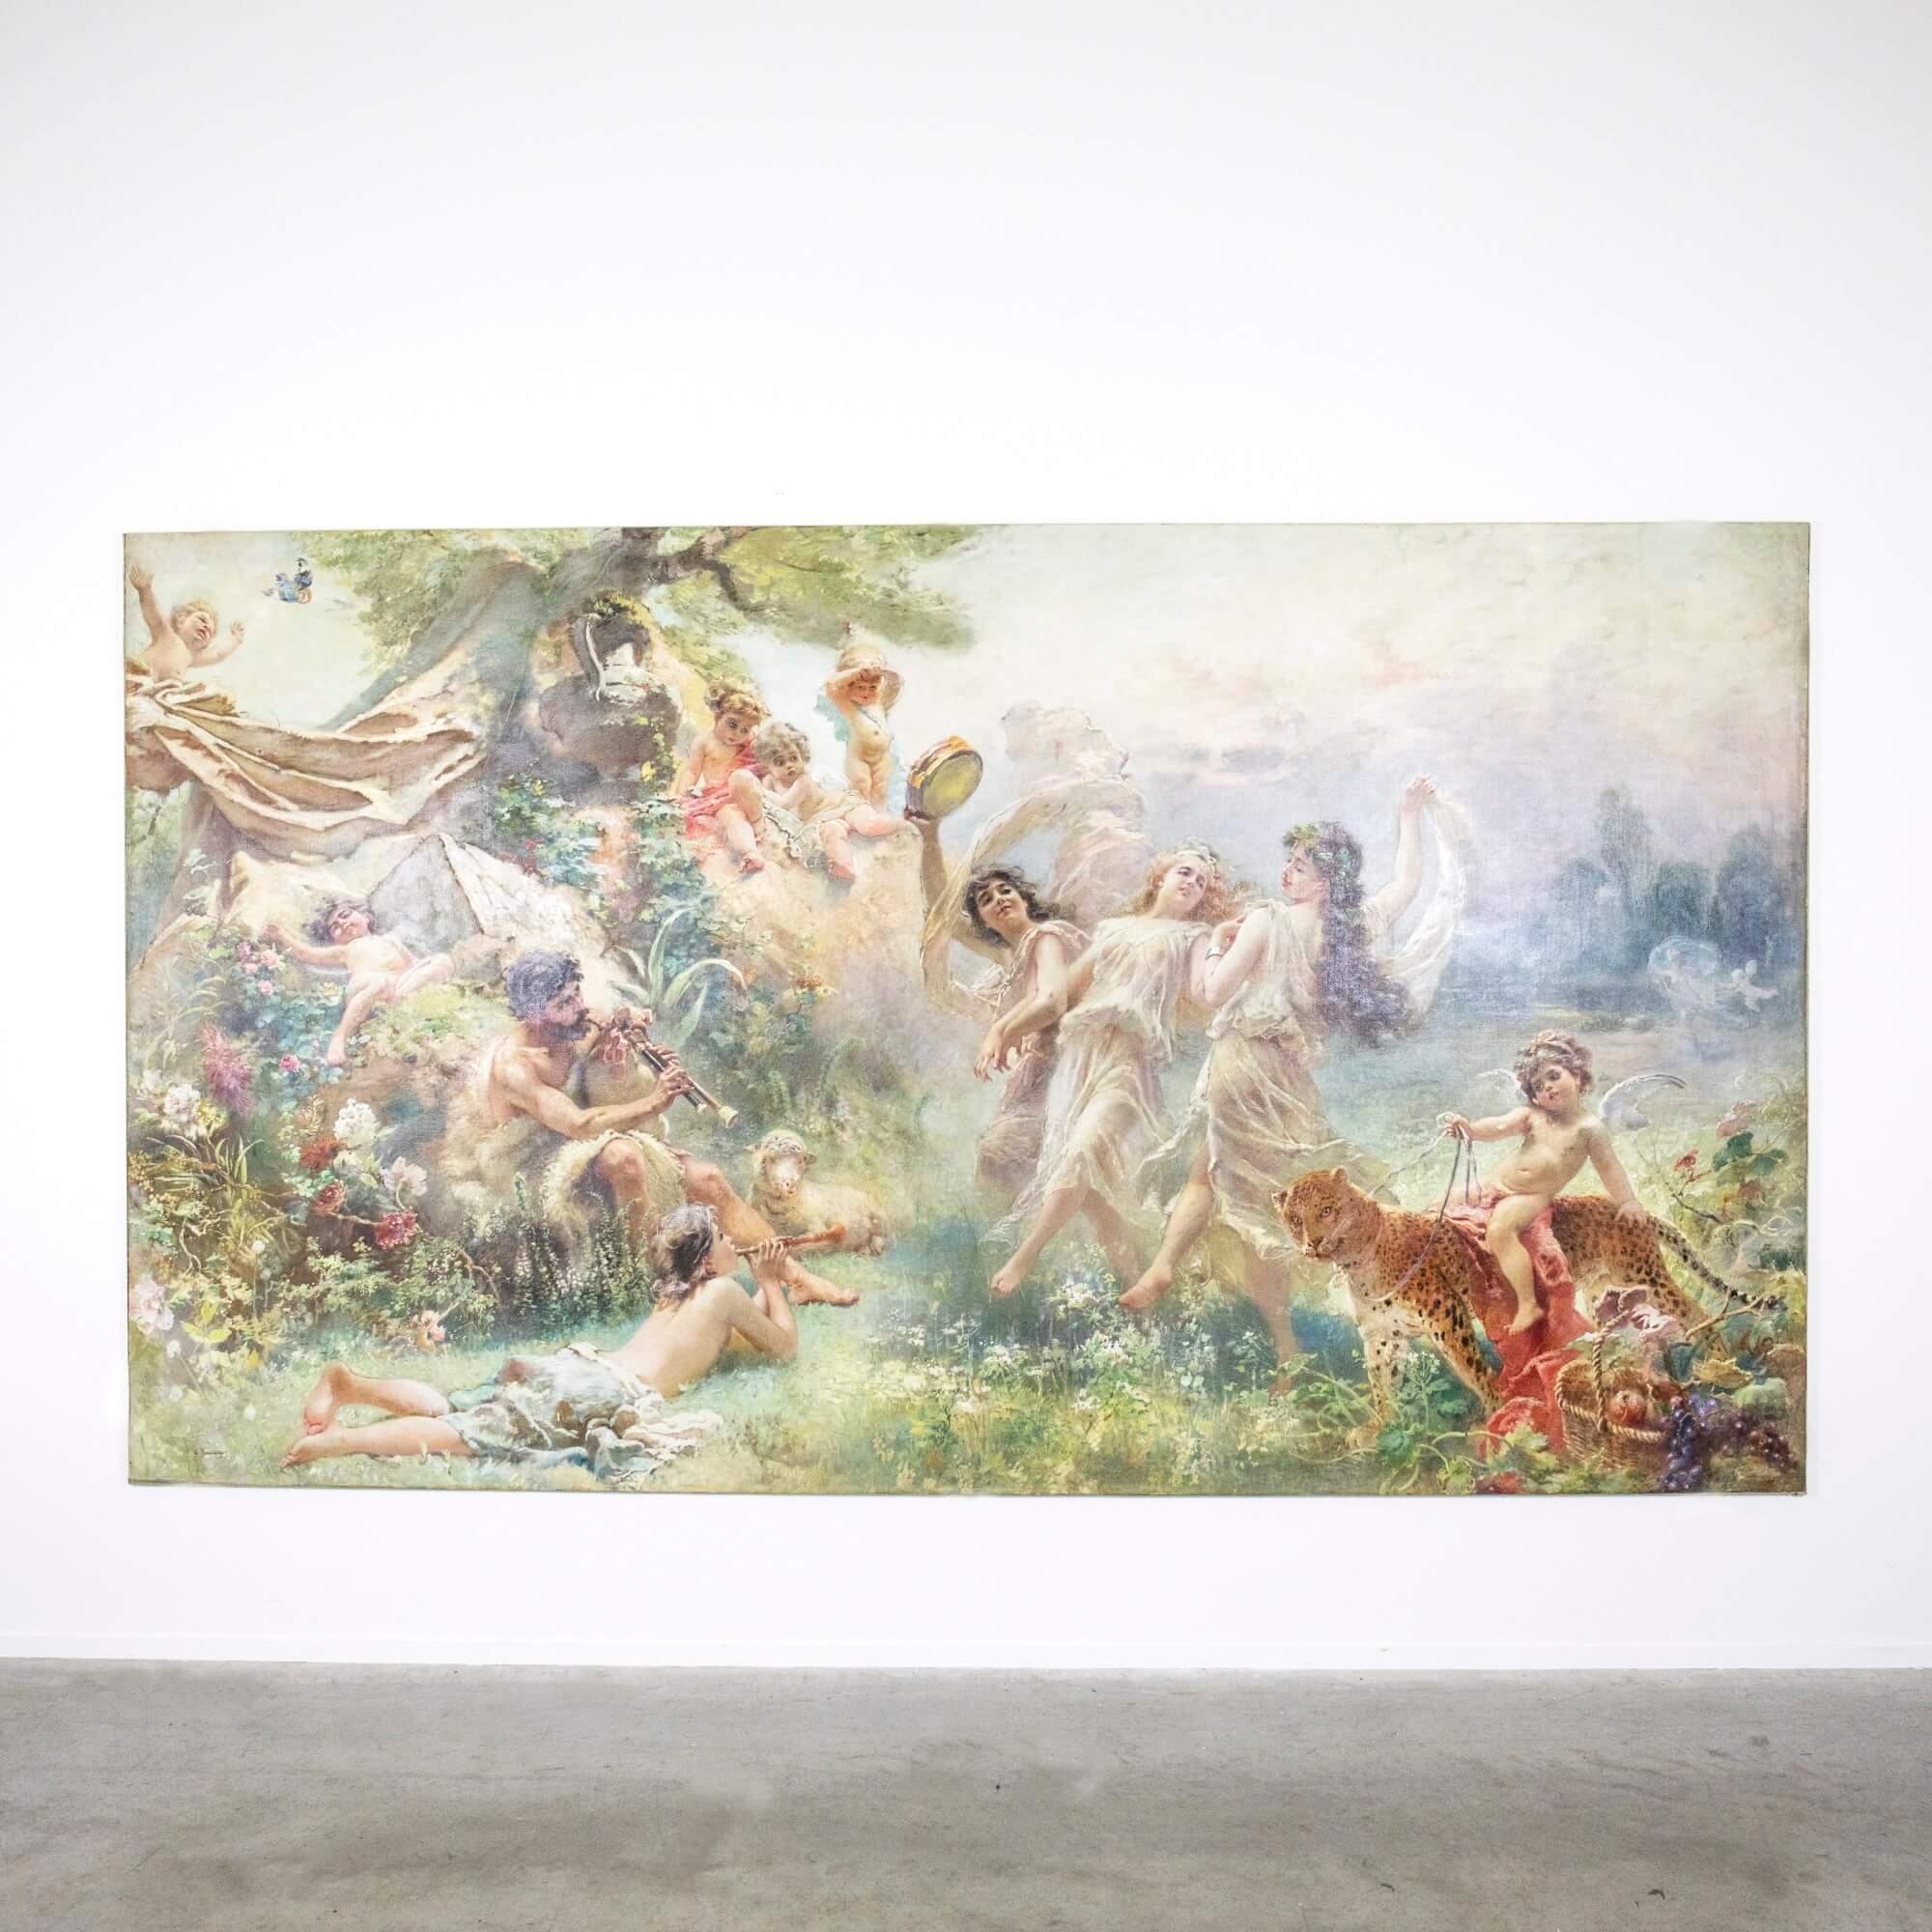 'Happy Arcadia' large mythological oil painting by Makovsky  - Gray Landscape Painting by Konstantin Egorovich Makovsky